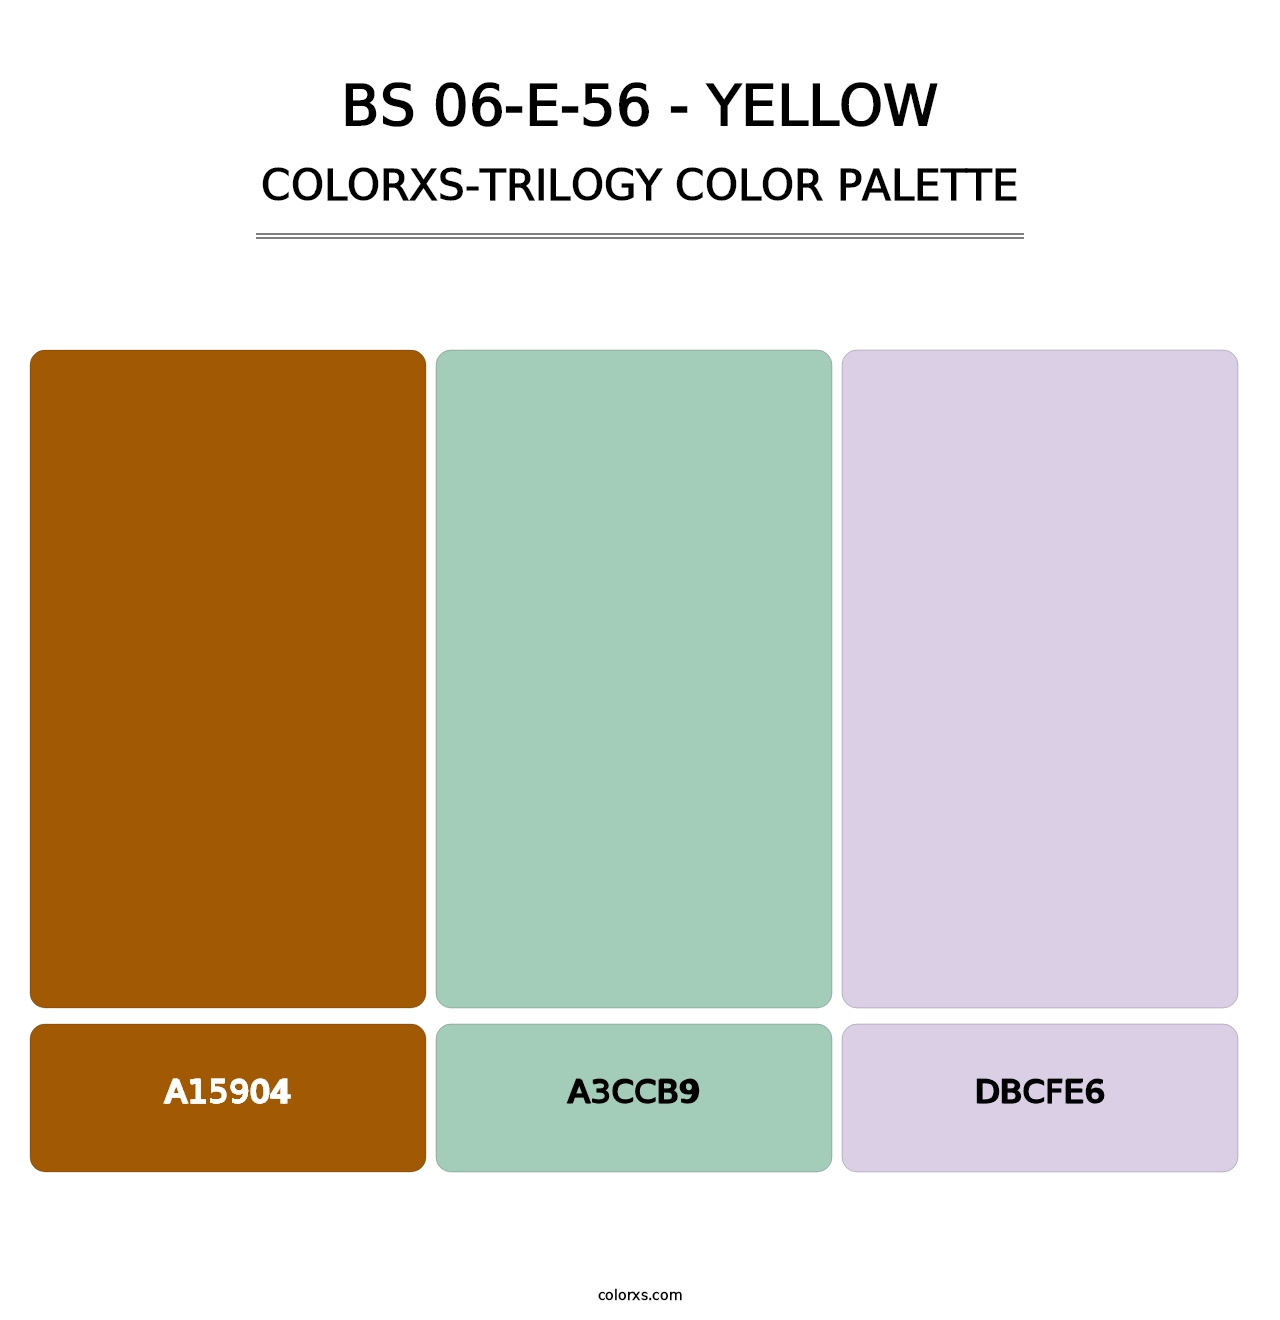 BS 06-E-56 - Yellow - Colorxs Trilogy Palette